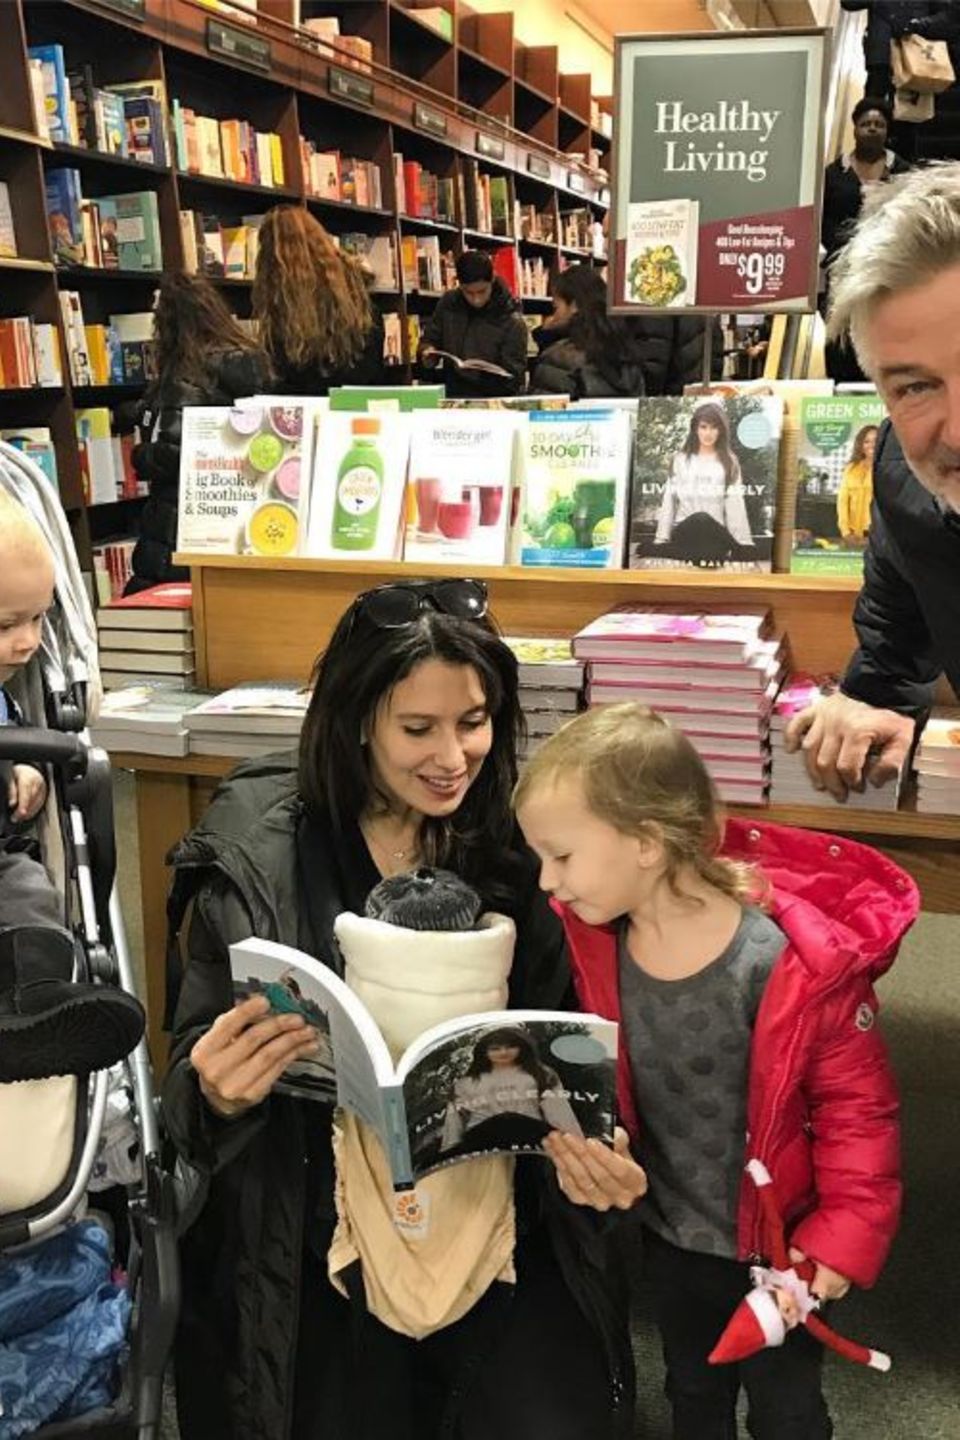 28. Dezember 2016   Alec Baldwin ist mächtig stolz auf seine Frau. Ein Ausflug mit der ganzen Familie zum nächsten Buchladen, um Mamas neues Buch zu bewundern, dass ist die Unterstützung, die eine Familie zusammenschweißt. Die Kids sind auch wirklich interessiert an dem Buch "The Living Clearly Method" auch wenn es eher die Bilder sind. 